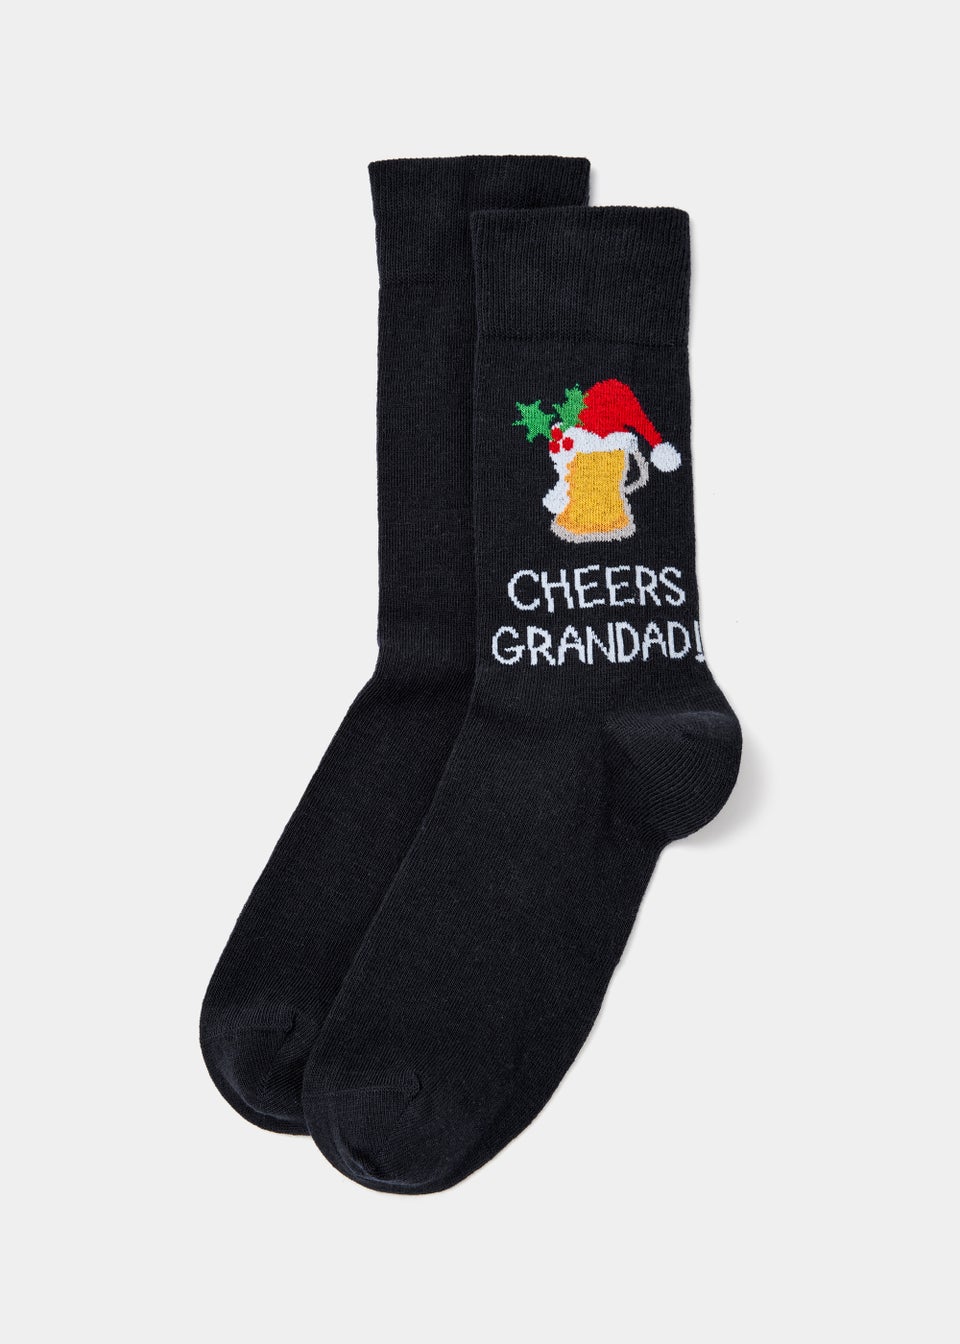 Black Cheers Grandad Socks